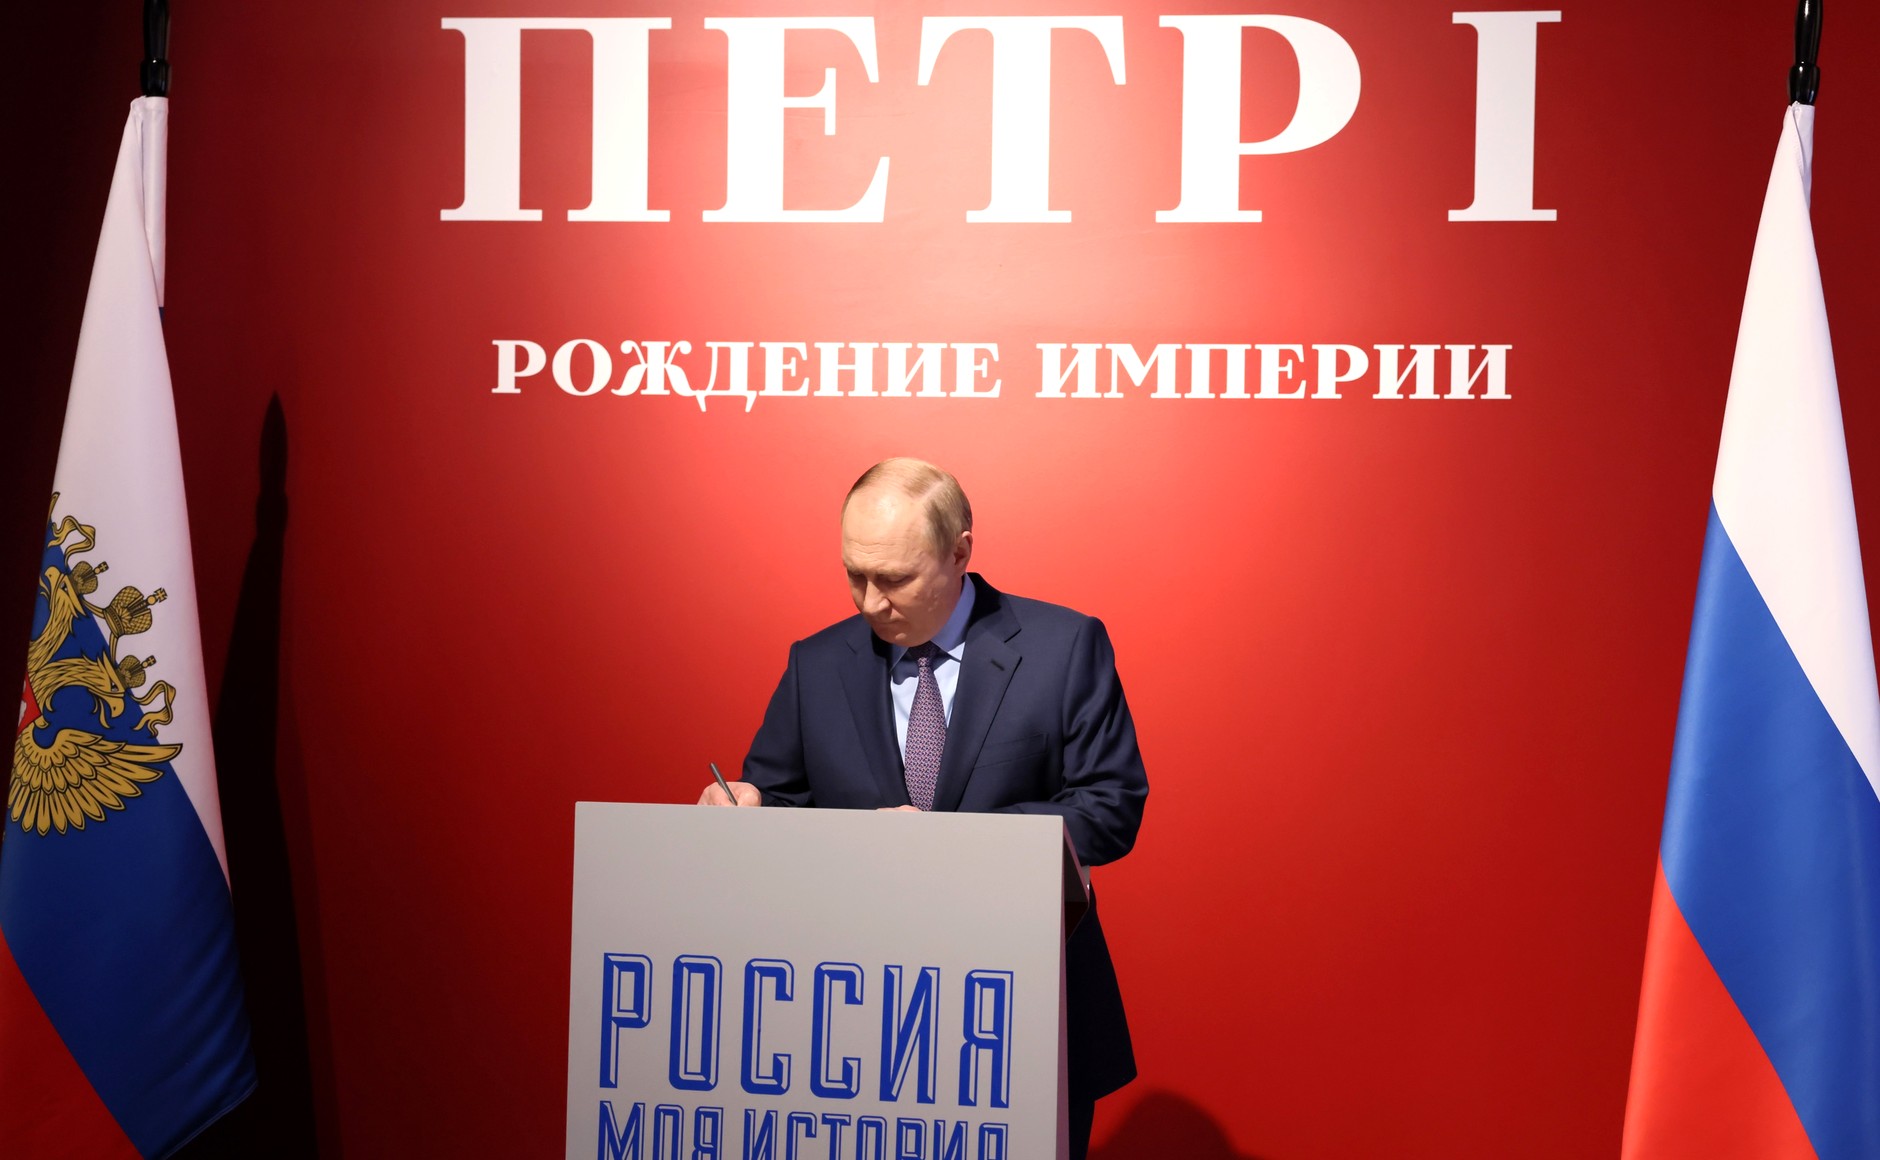 Putyin először beszélt nyíltan területszerzésről